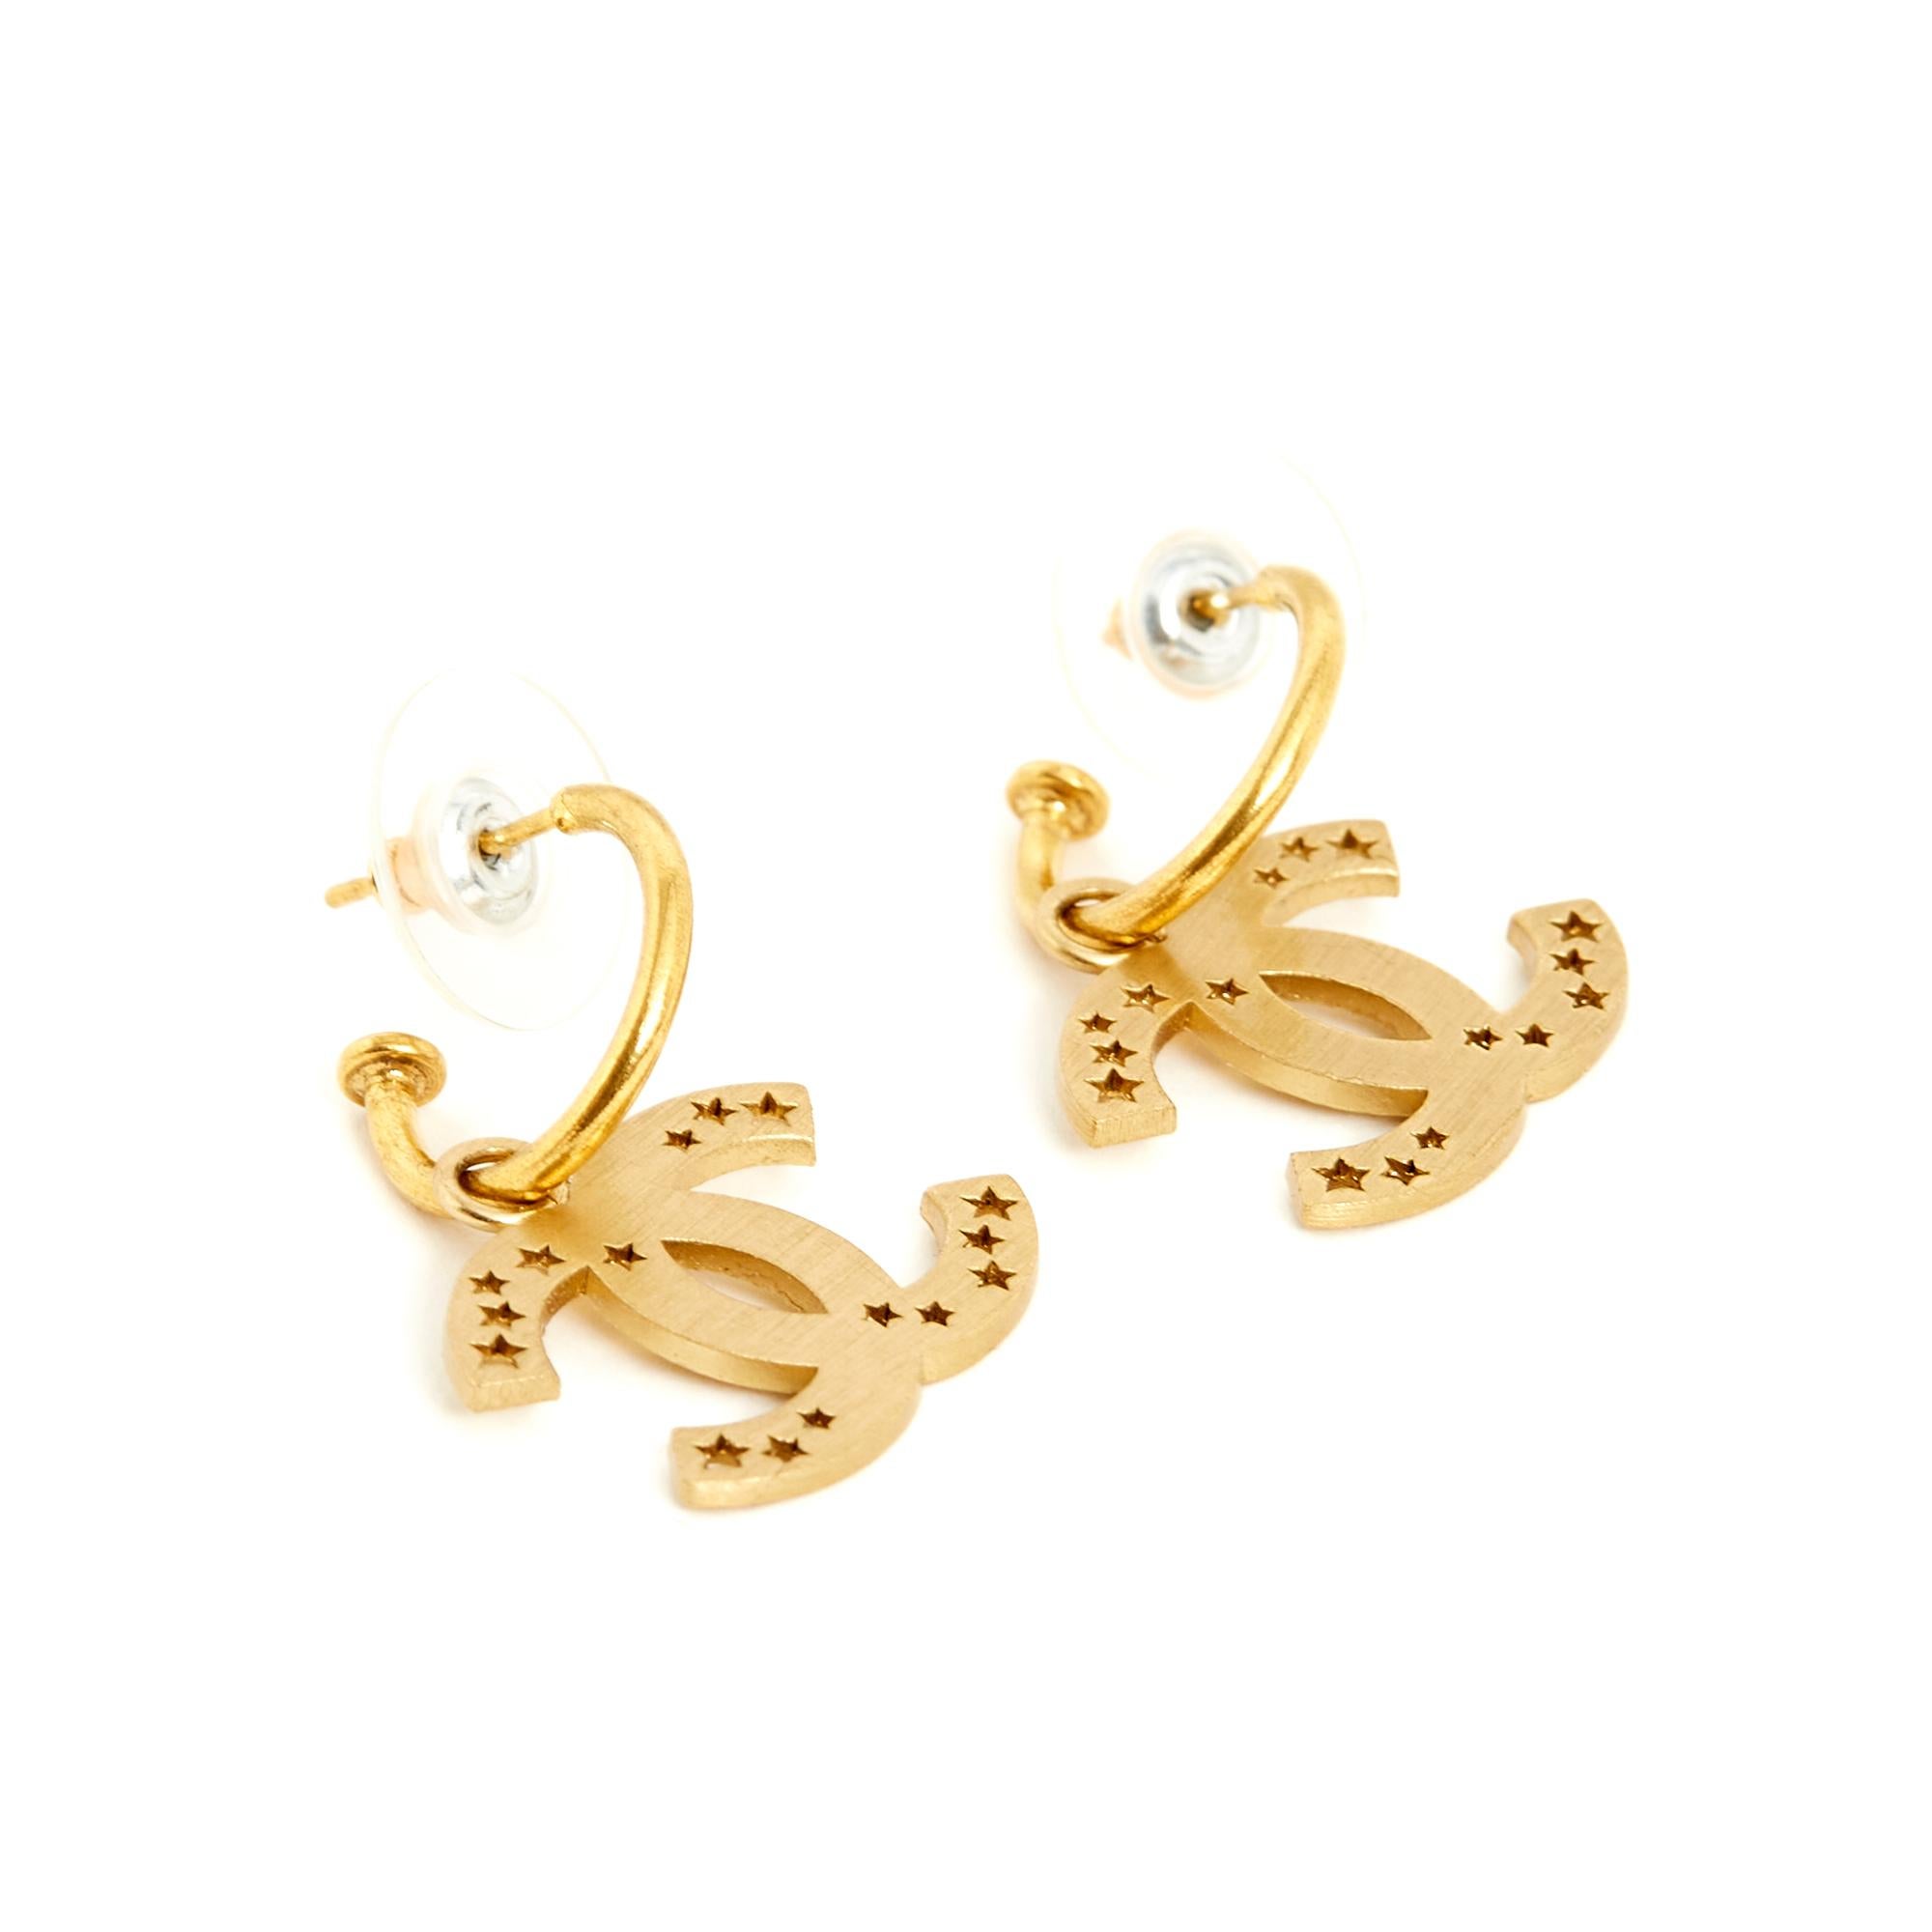 Chanel Gold Drop Earrings - 149 For Sale on 1stDibs  chanel drop earrings, chanel  earrings, chanel gold drop cc earrings